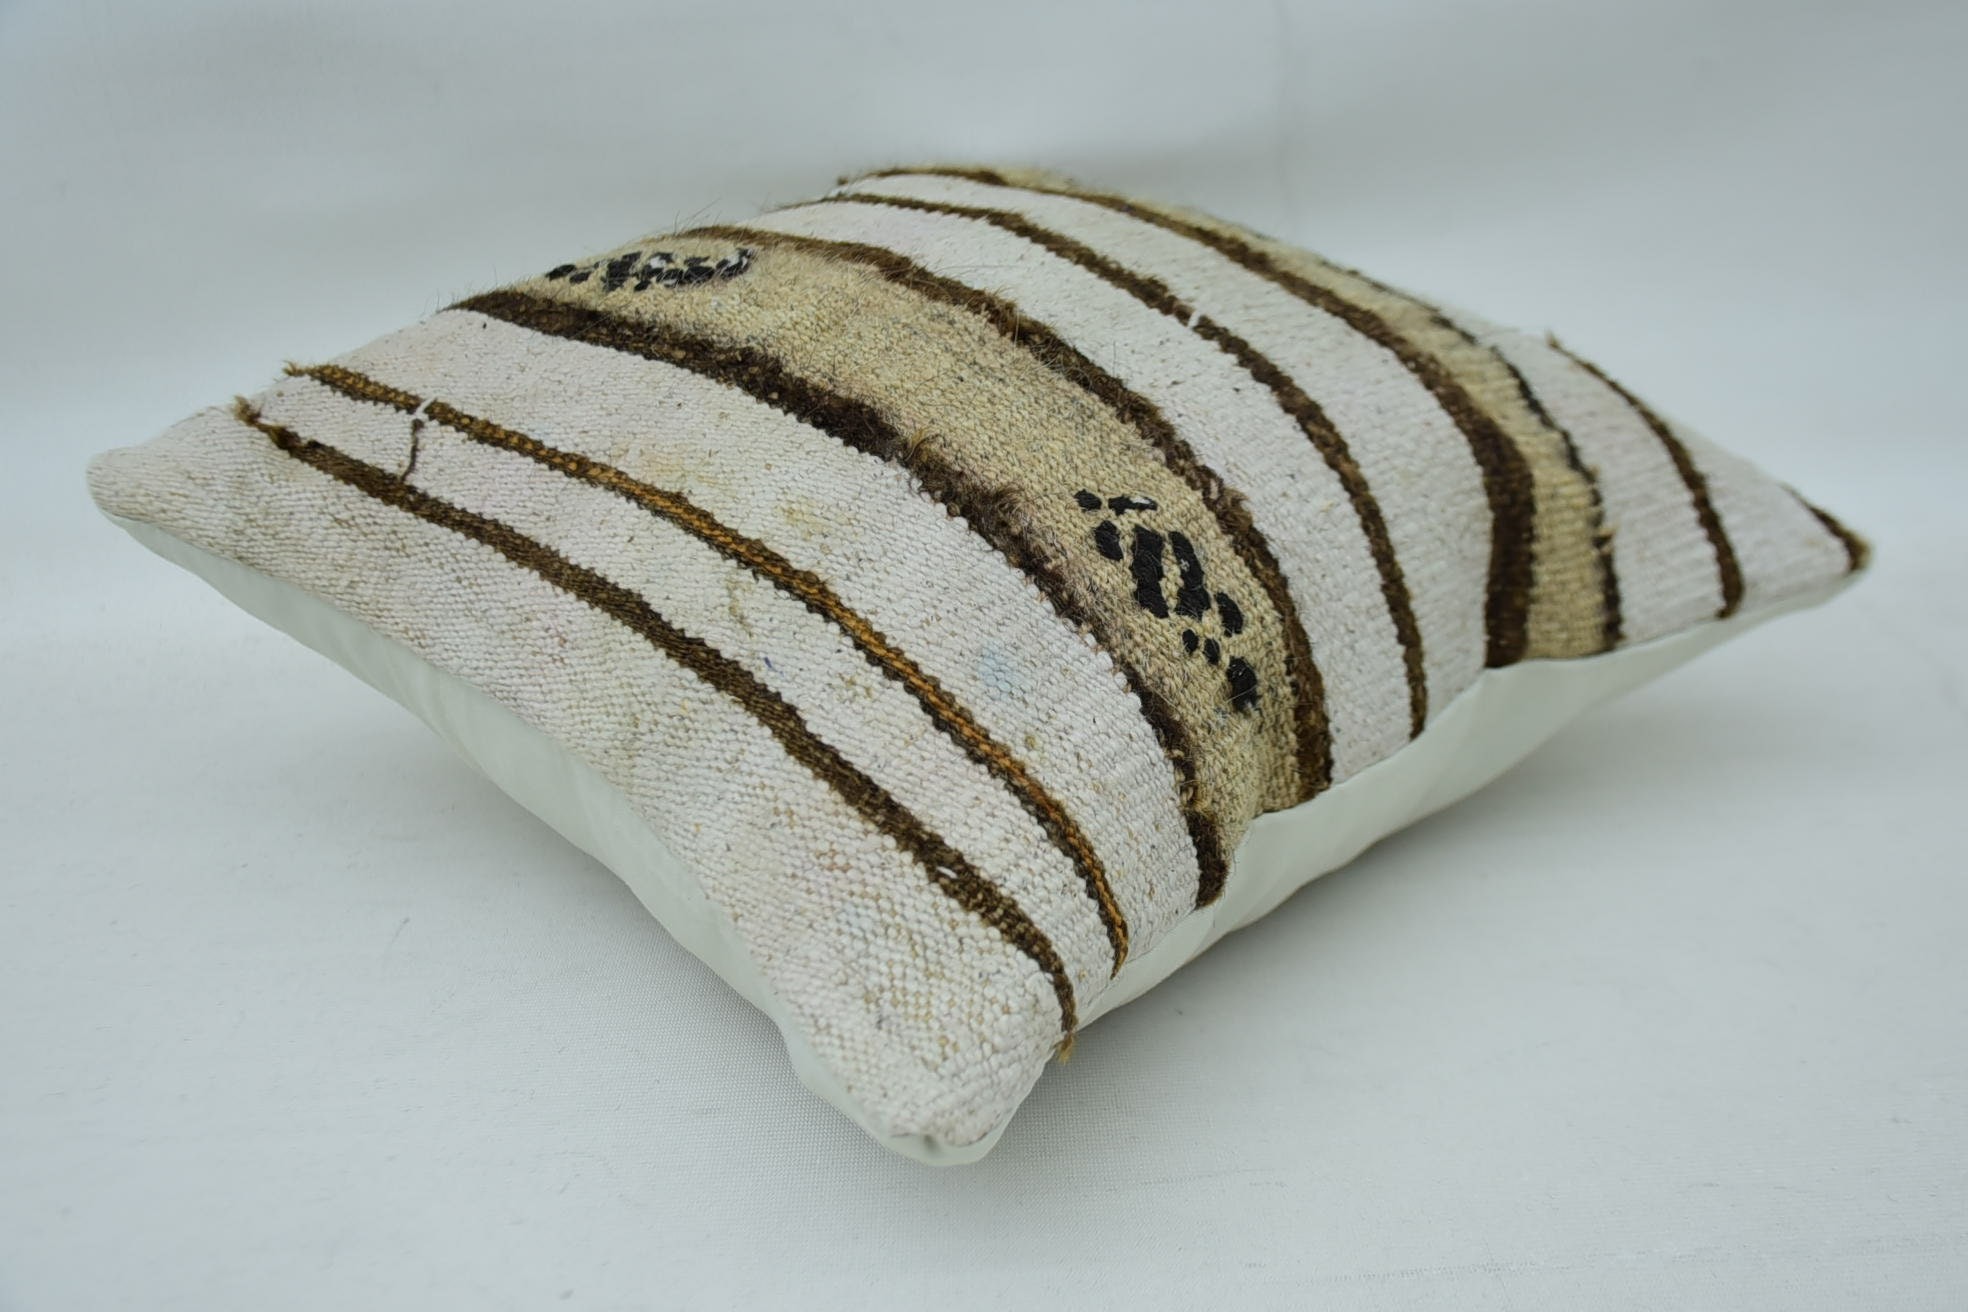 Pillow for Sofa, 14"x14" White Pillow, Boho Pillow Sham Cover, Vintage Kilim Throw Pillow, Morroccon Kilim Cushion Pillow